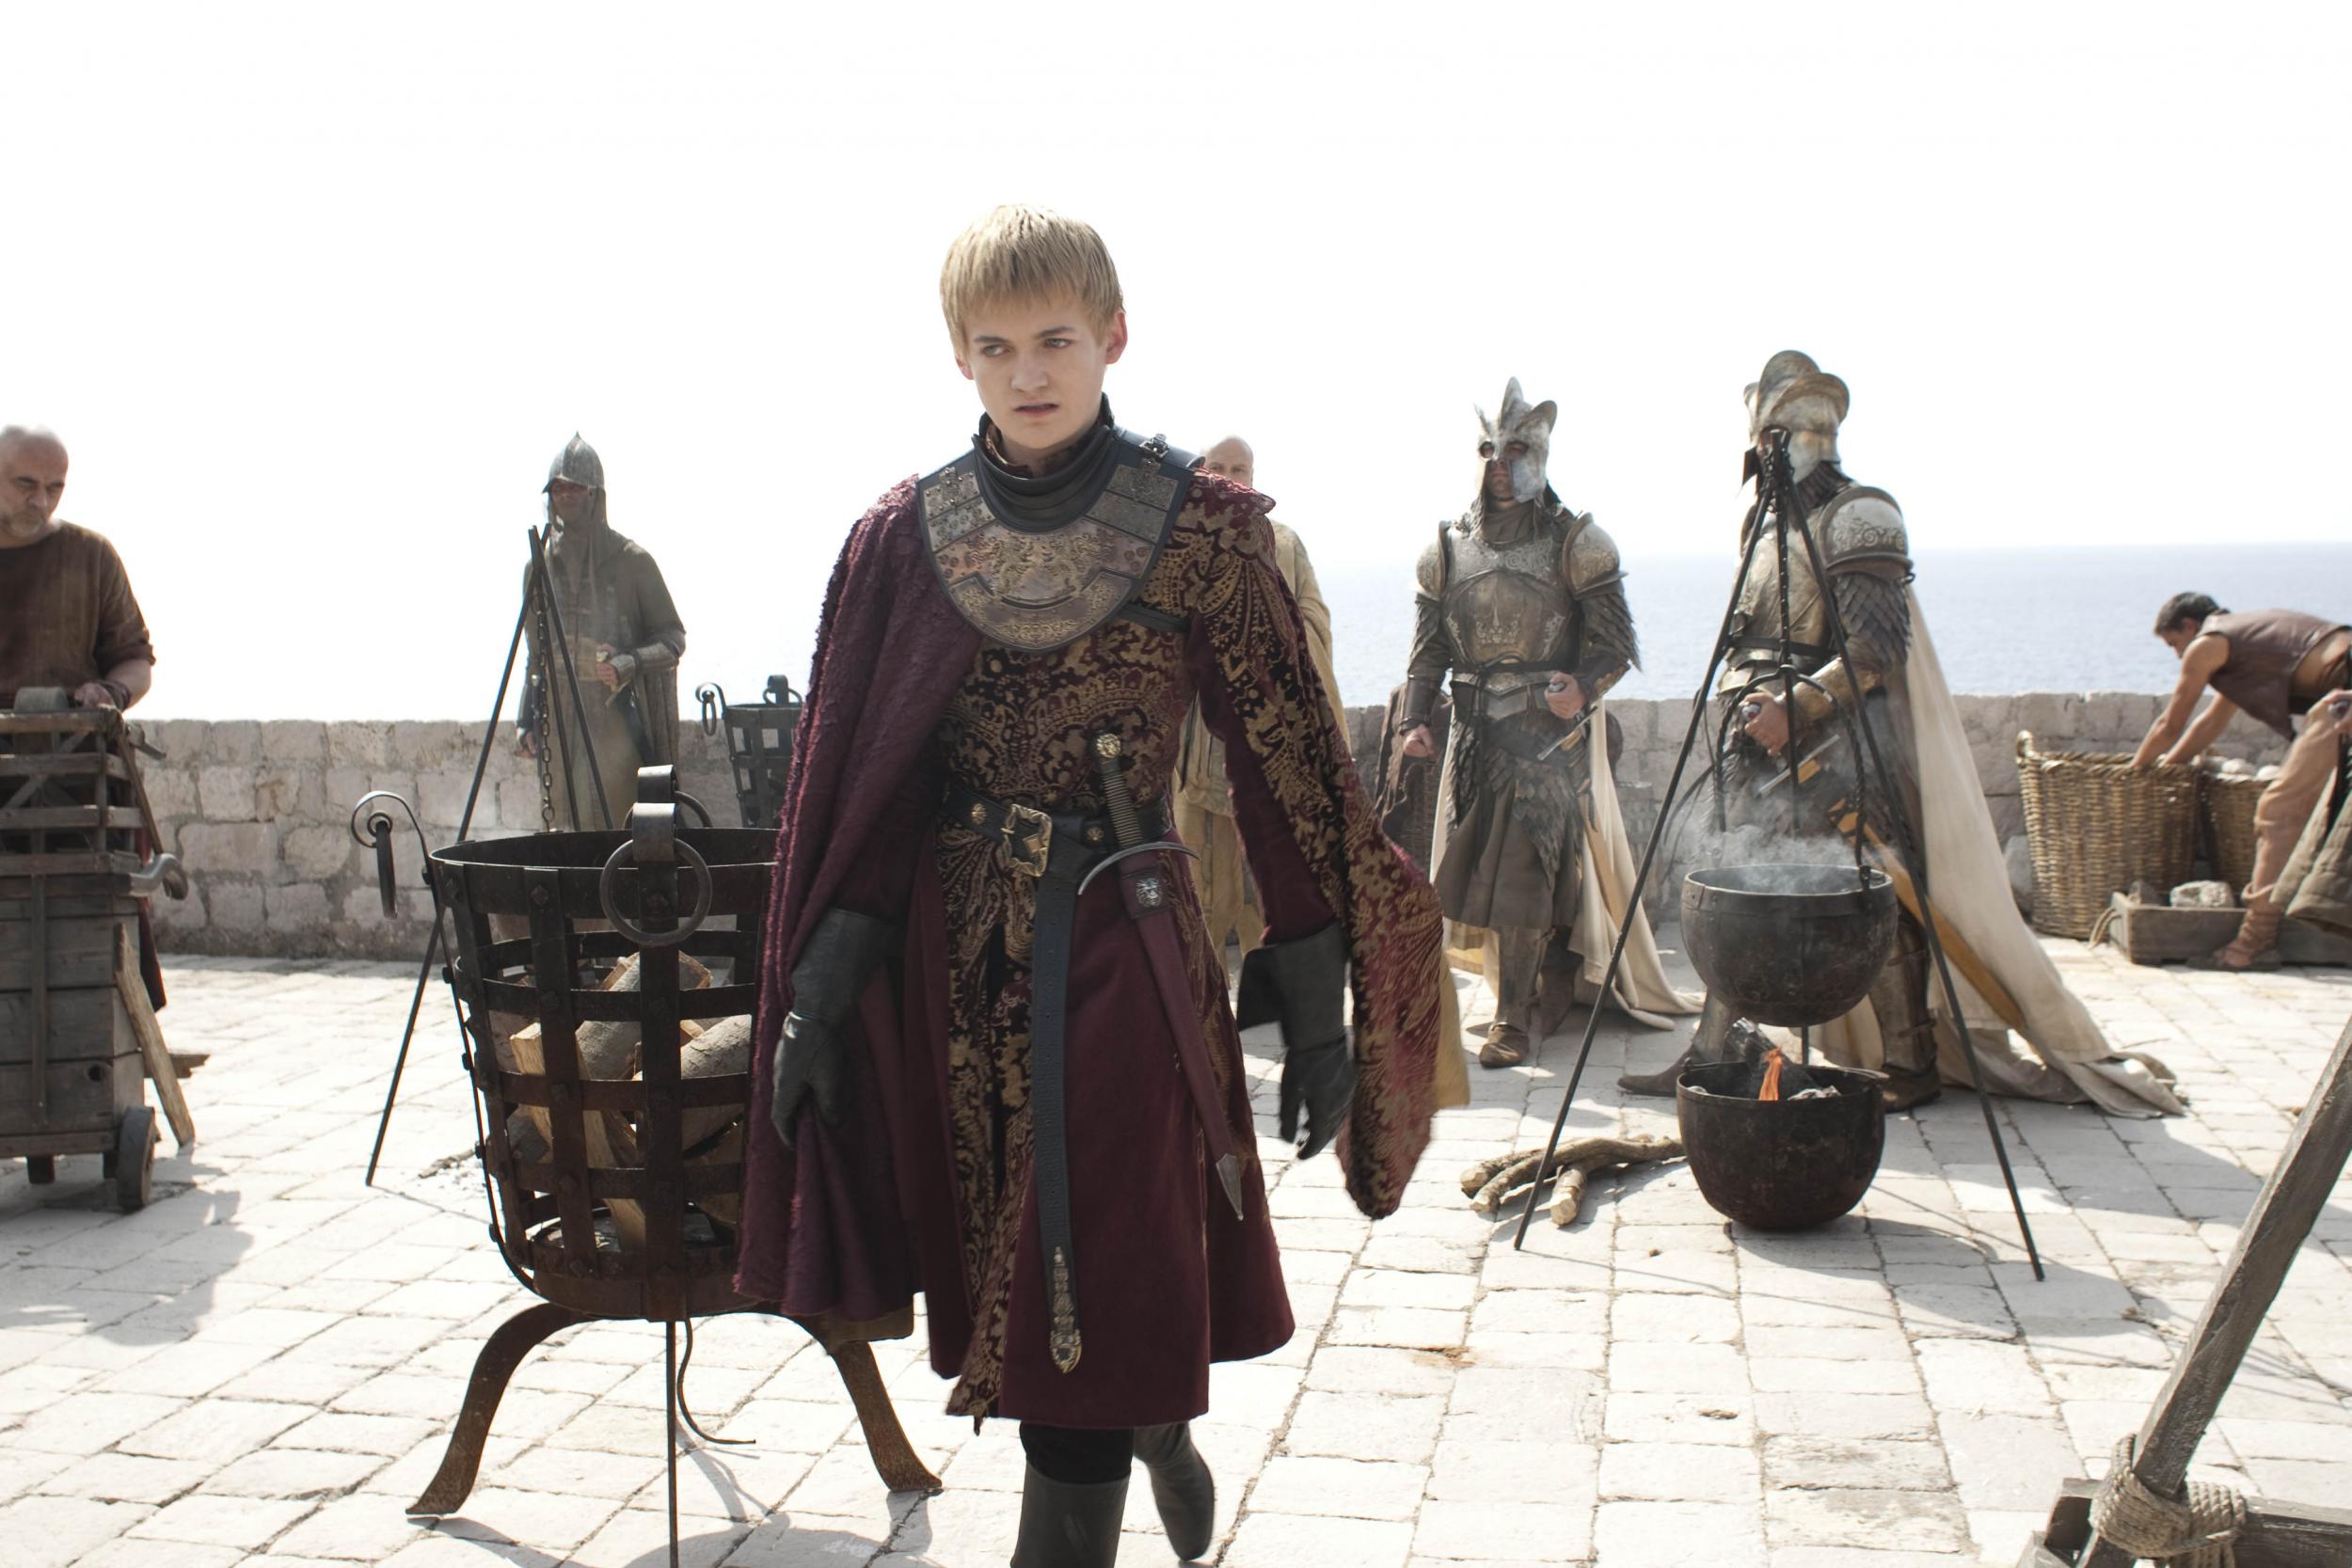 Joffrey Baratheon - TV's greatest villain?